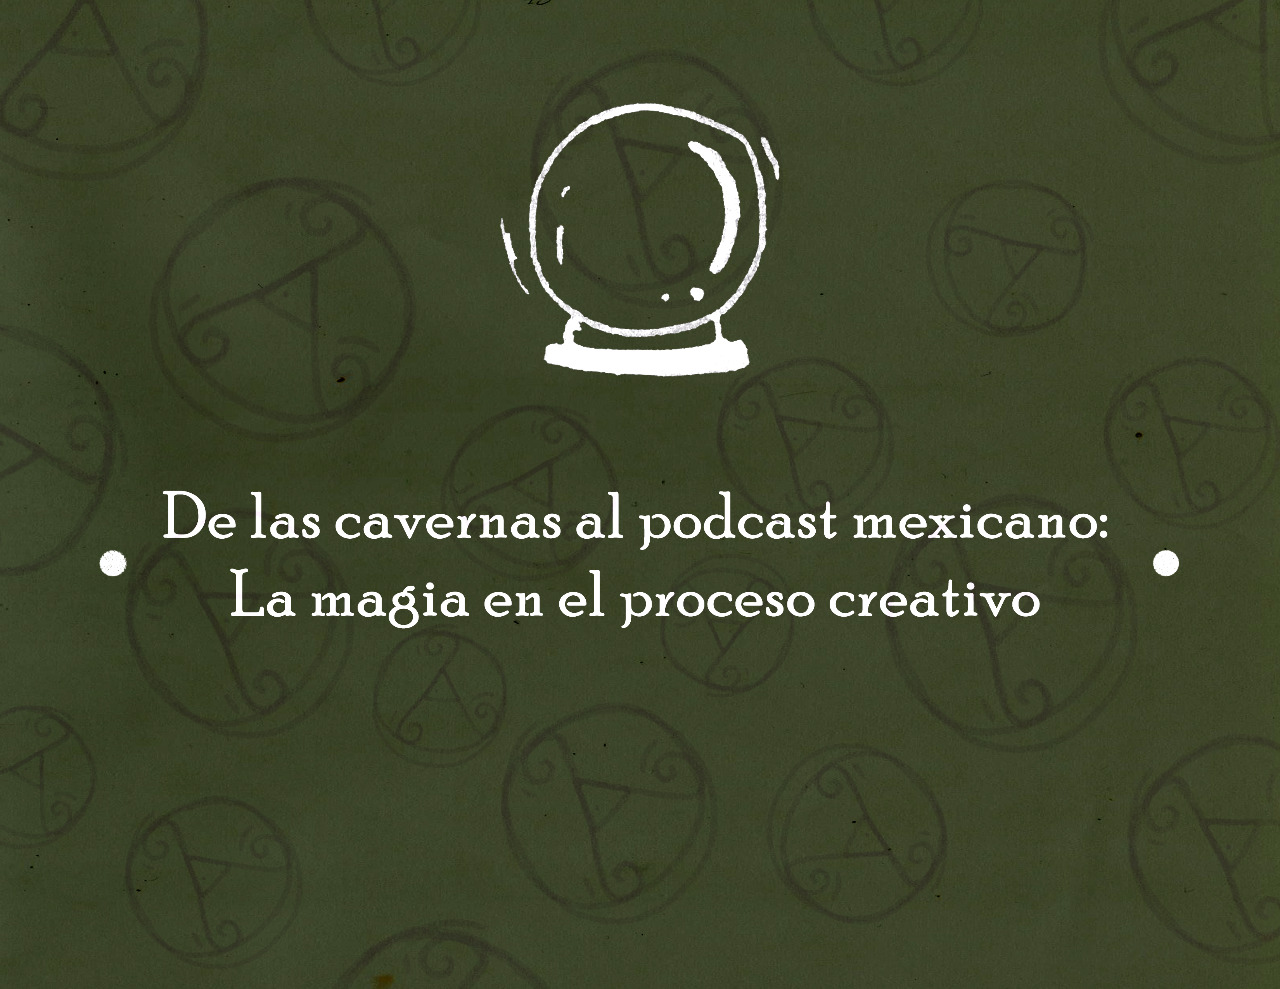 De las cavernas al podcast mexicano. La magia en el proceso creativo